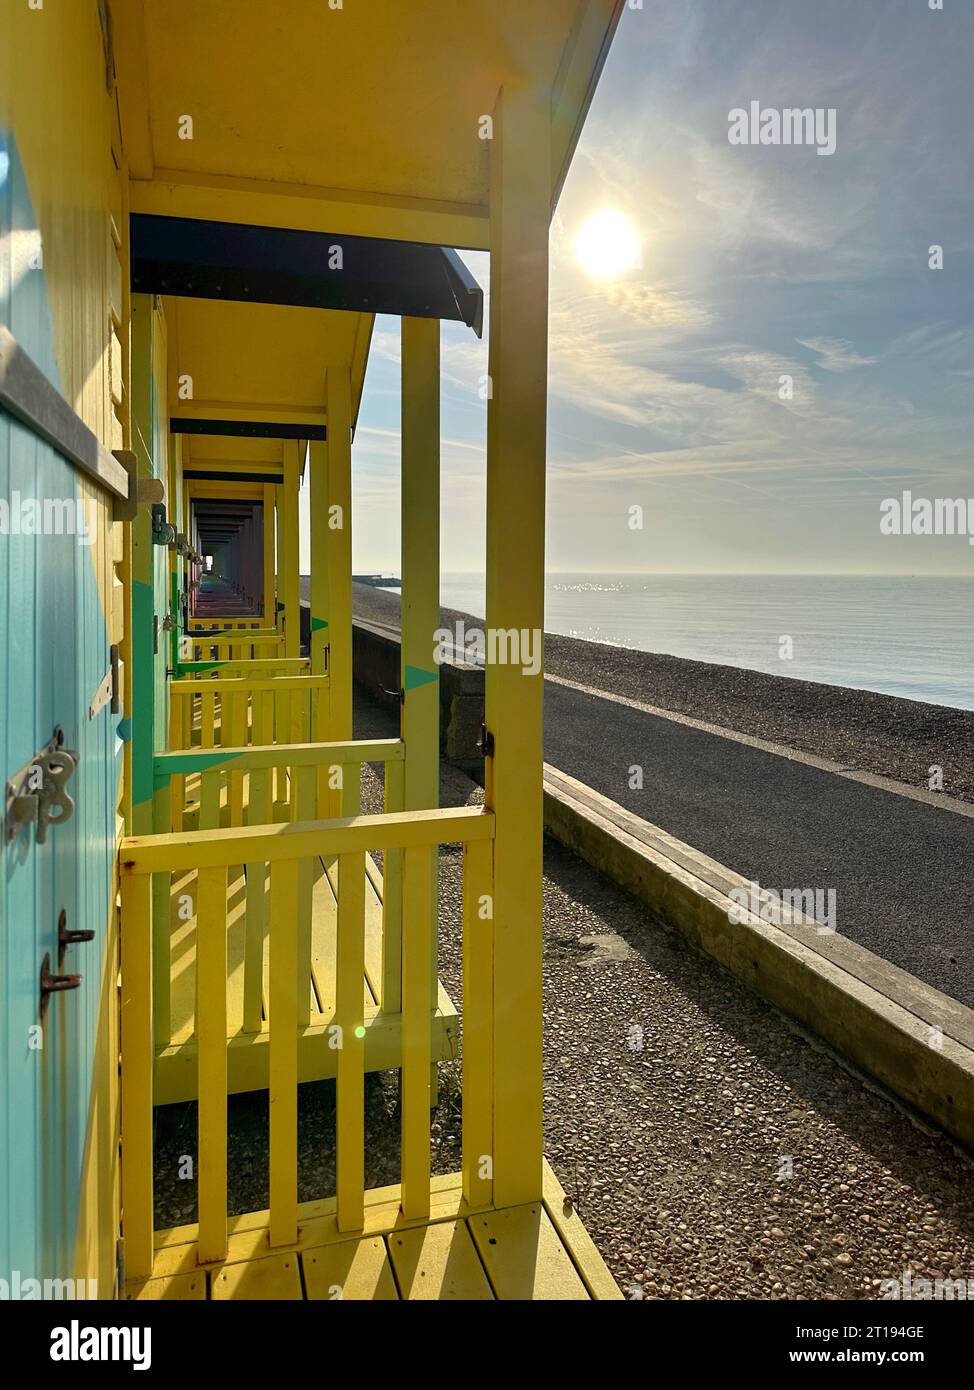 Rangée de cabanes de plage en bois multicolores sur la plage, Folkestone, Kent, Angleterre, Royaume-Uni Banque D'Images